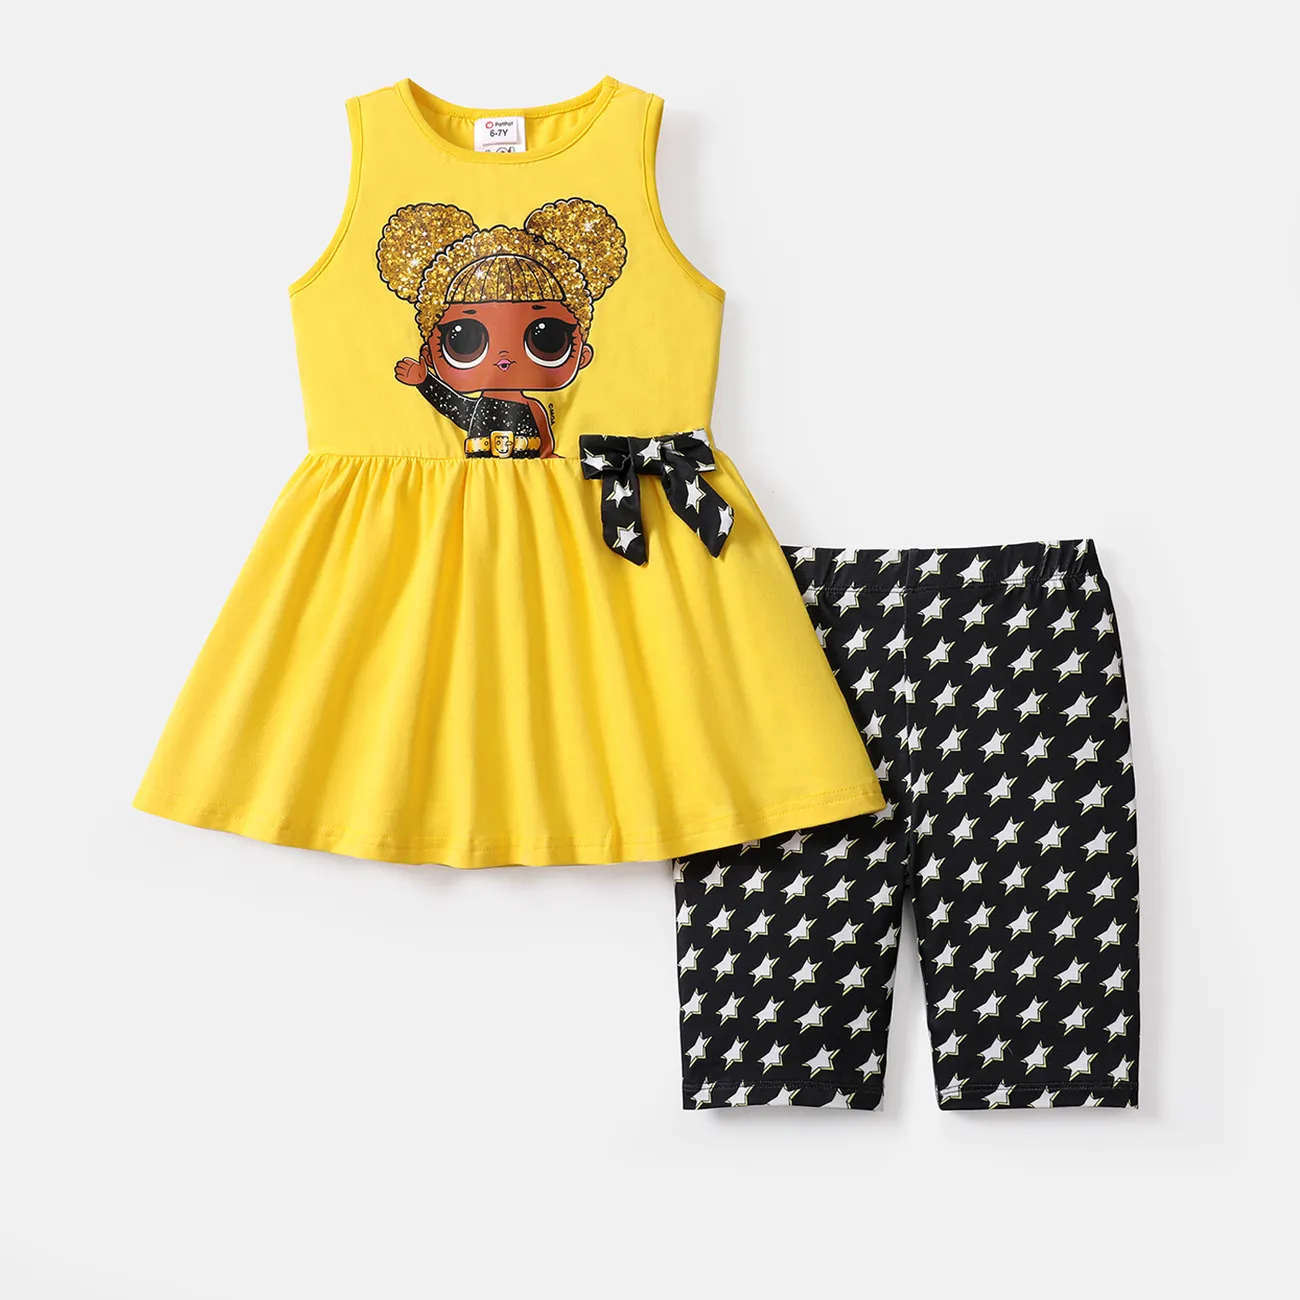 Lol. Überraschung! 2-teiliges Set aus ärmellosem T-Shirt und Shorts für Kleinkinder / Mädchen mit Bowknot-Design gelb big image 1